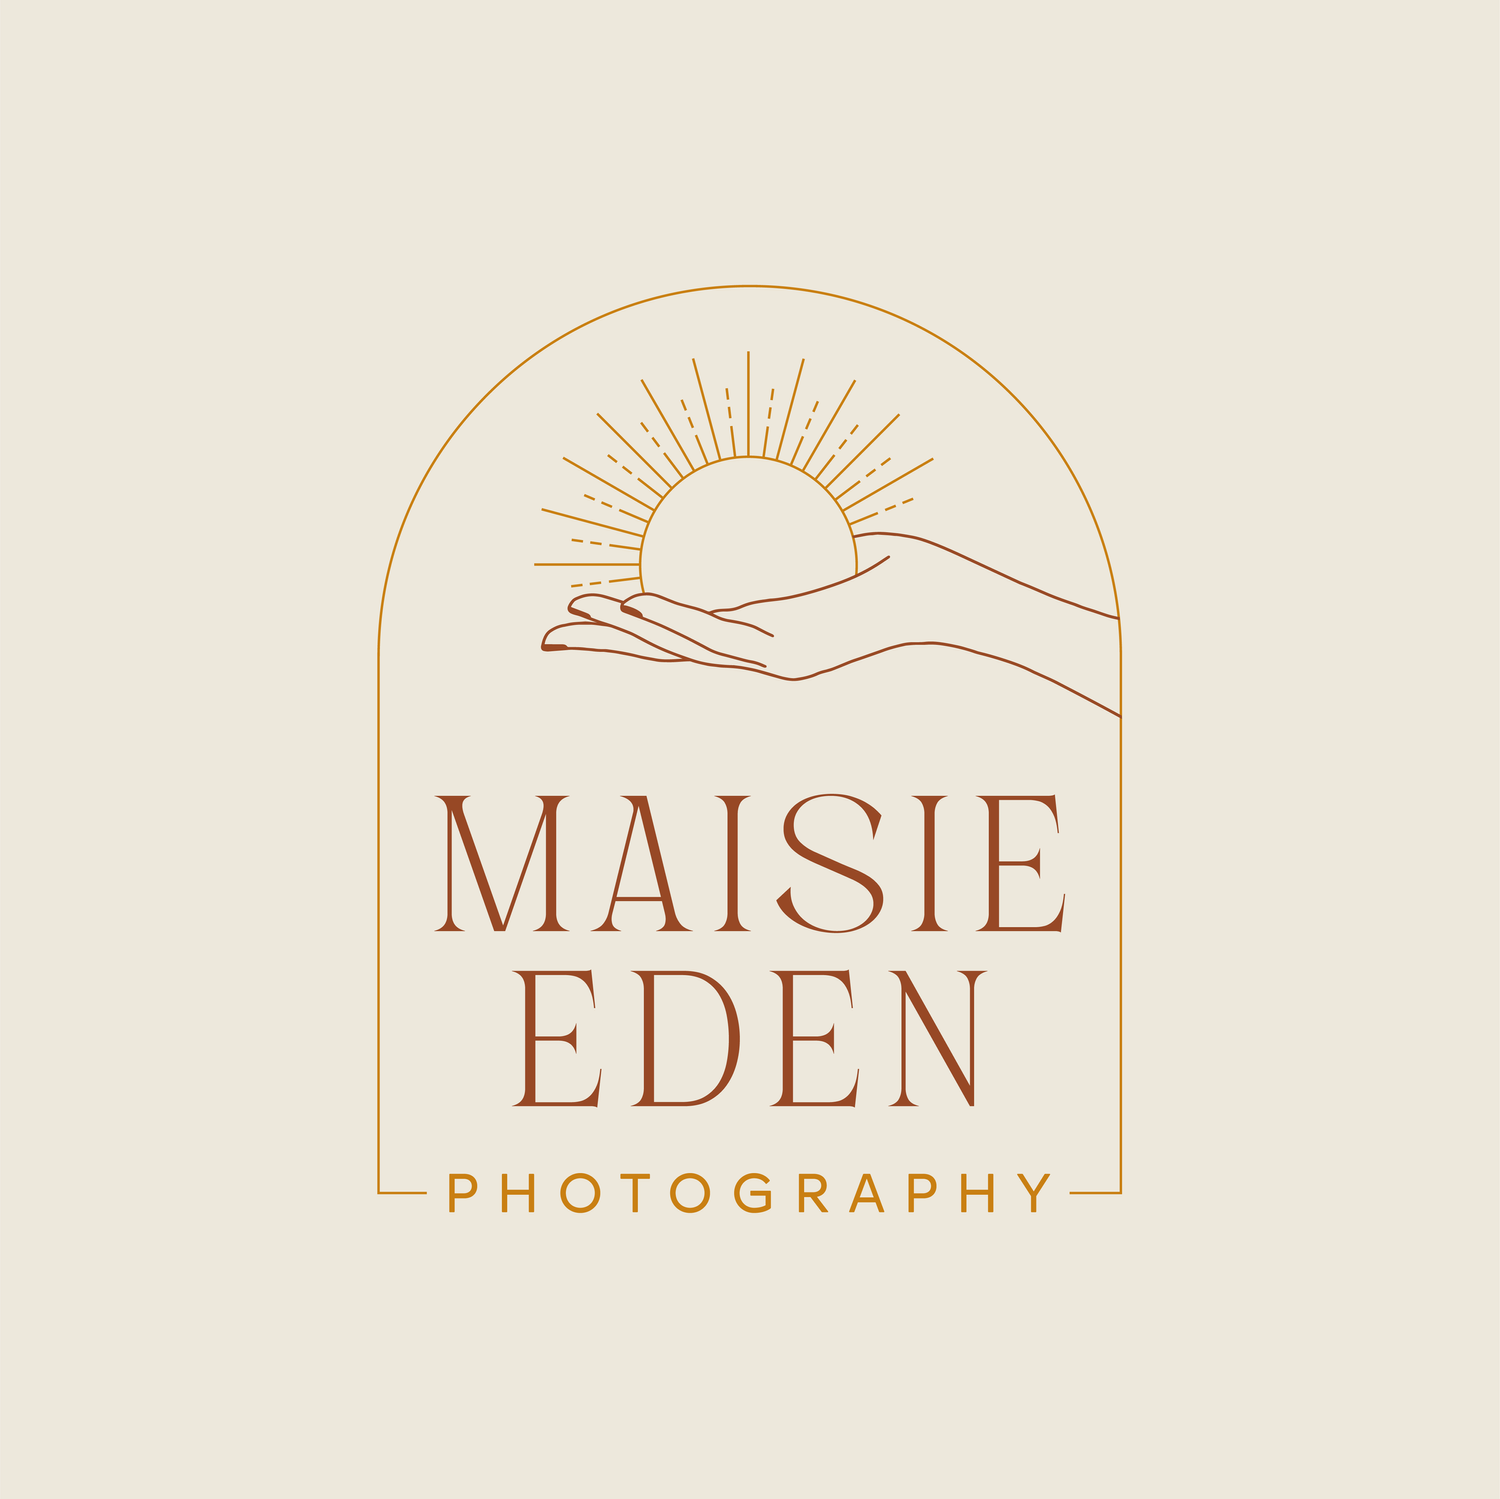 Maisie Eden Photography